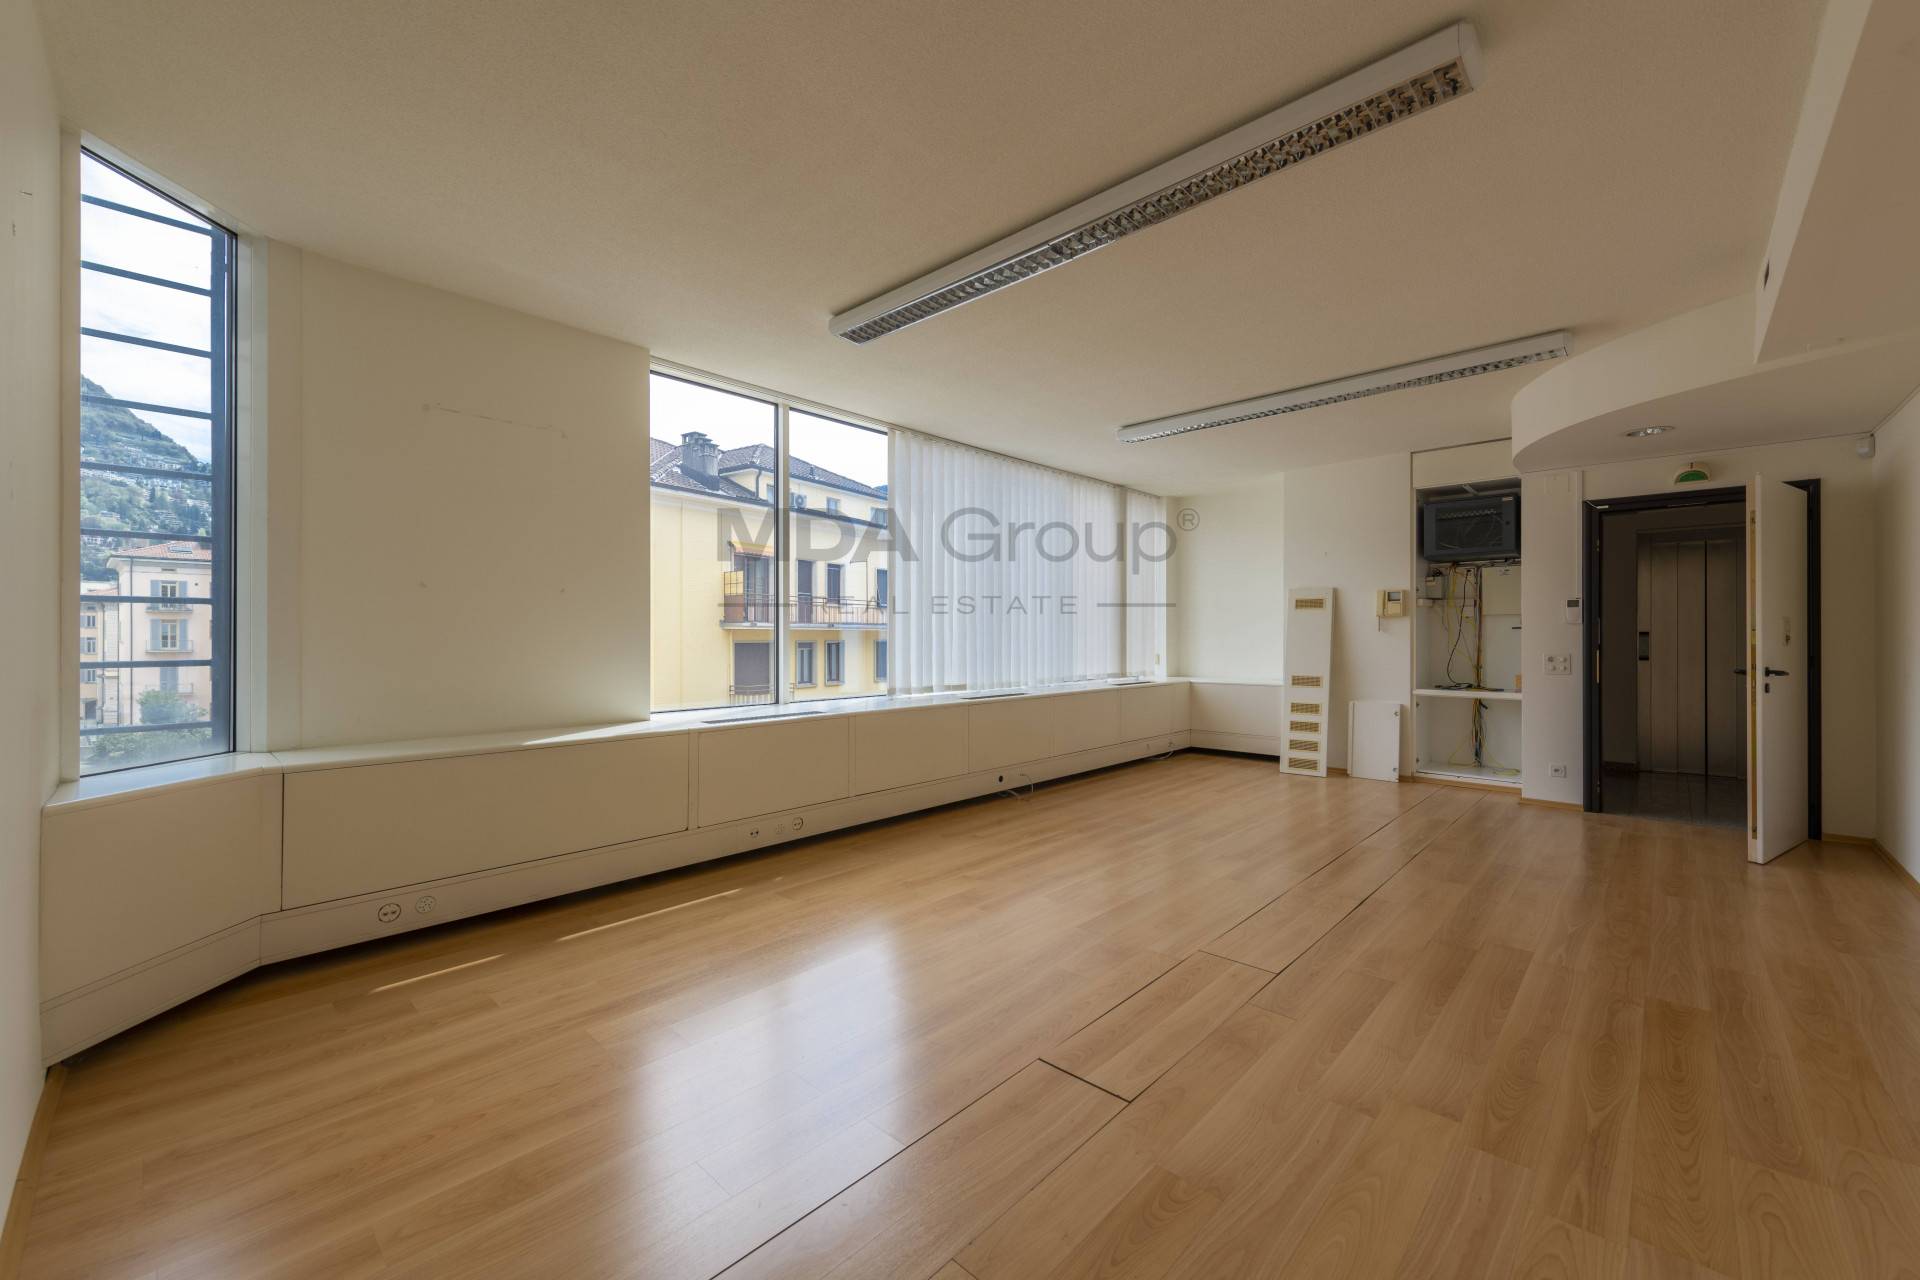 Studio/Ufficio in affitto a Lugano